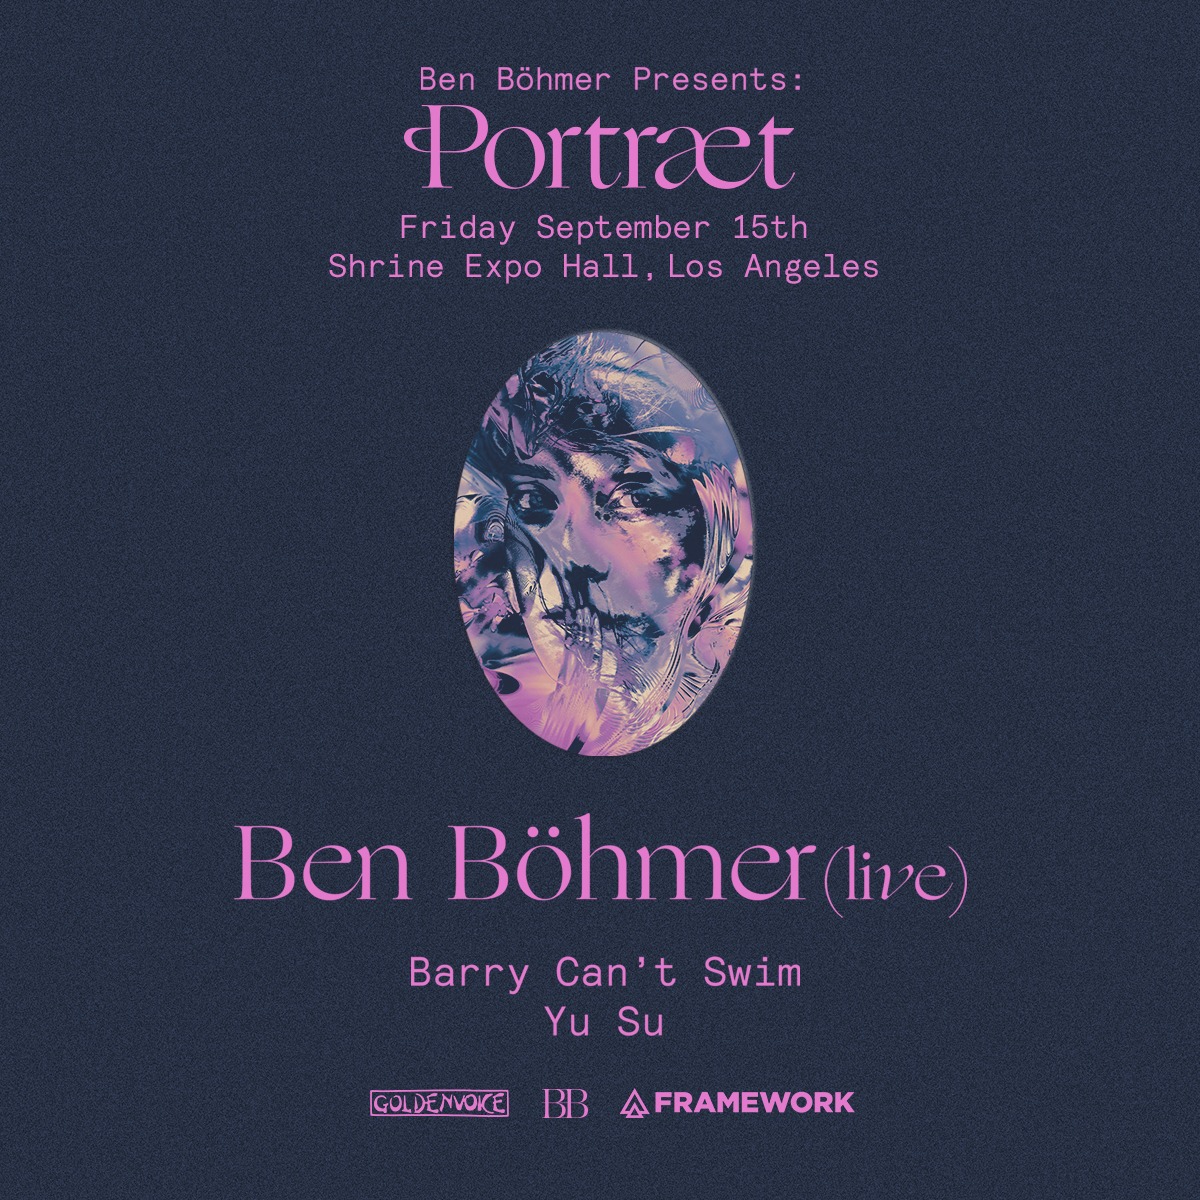 Ben Böhmer presents Portraet - Los Angeles